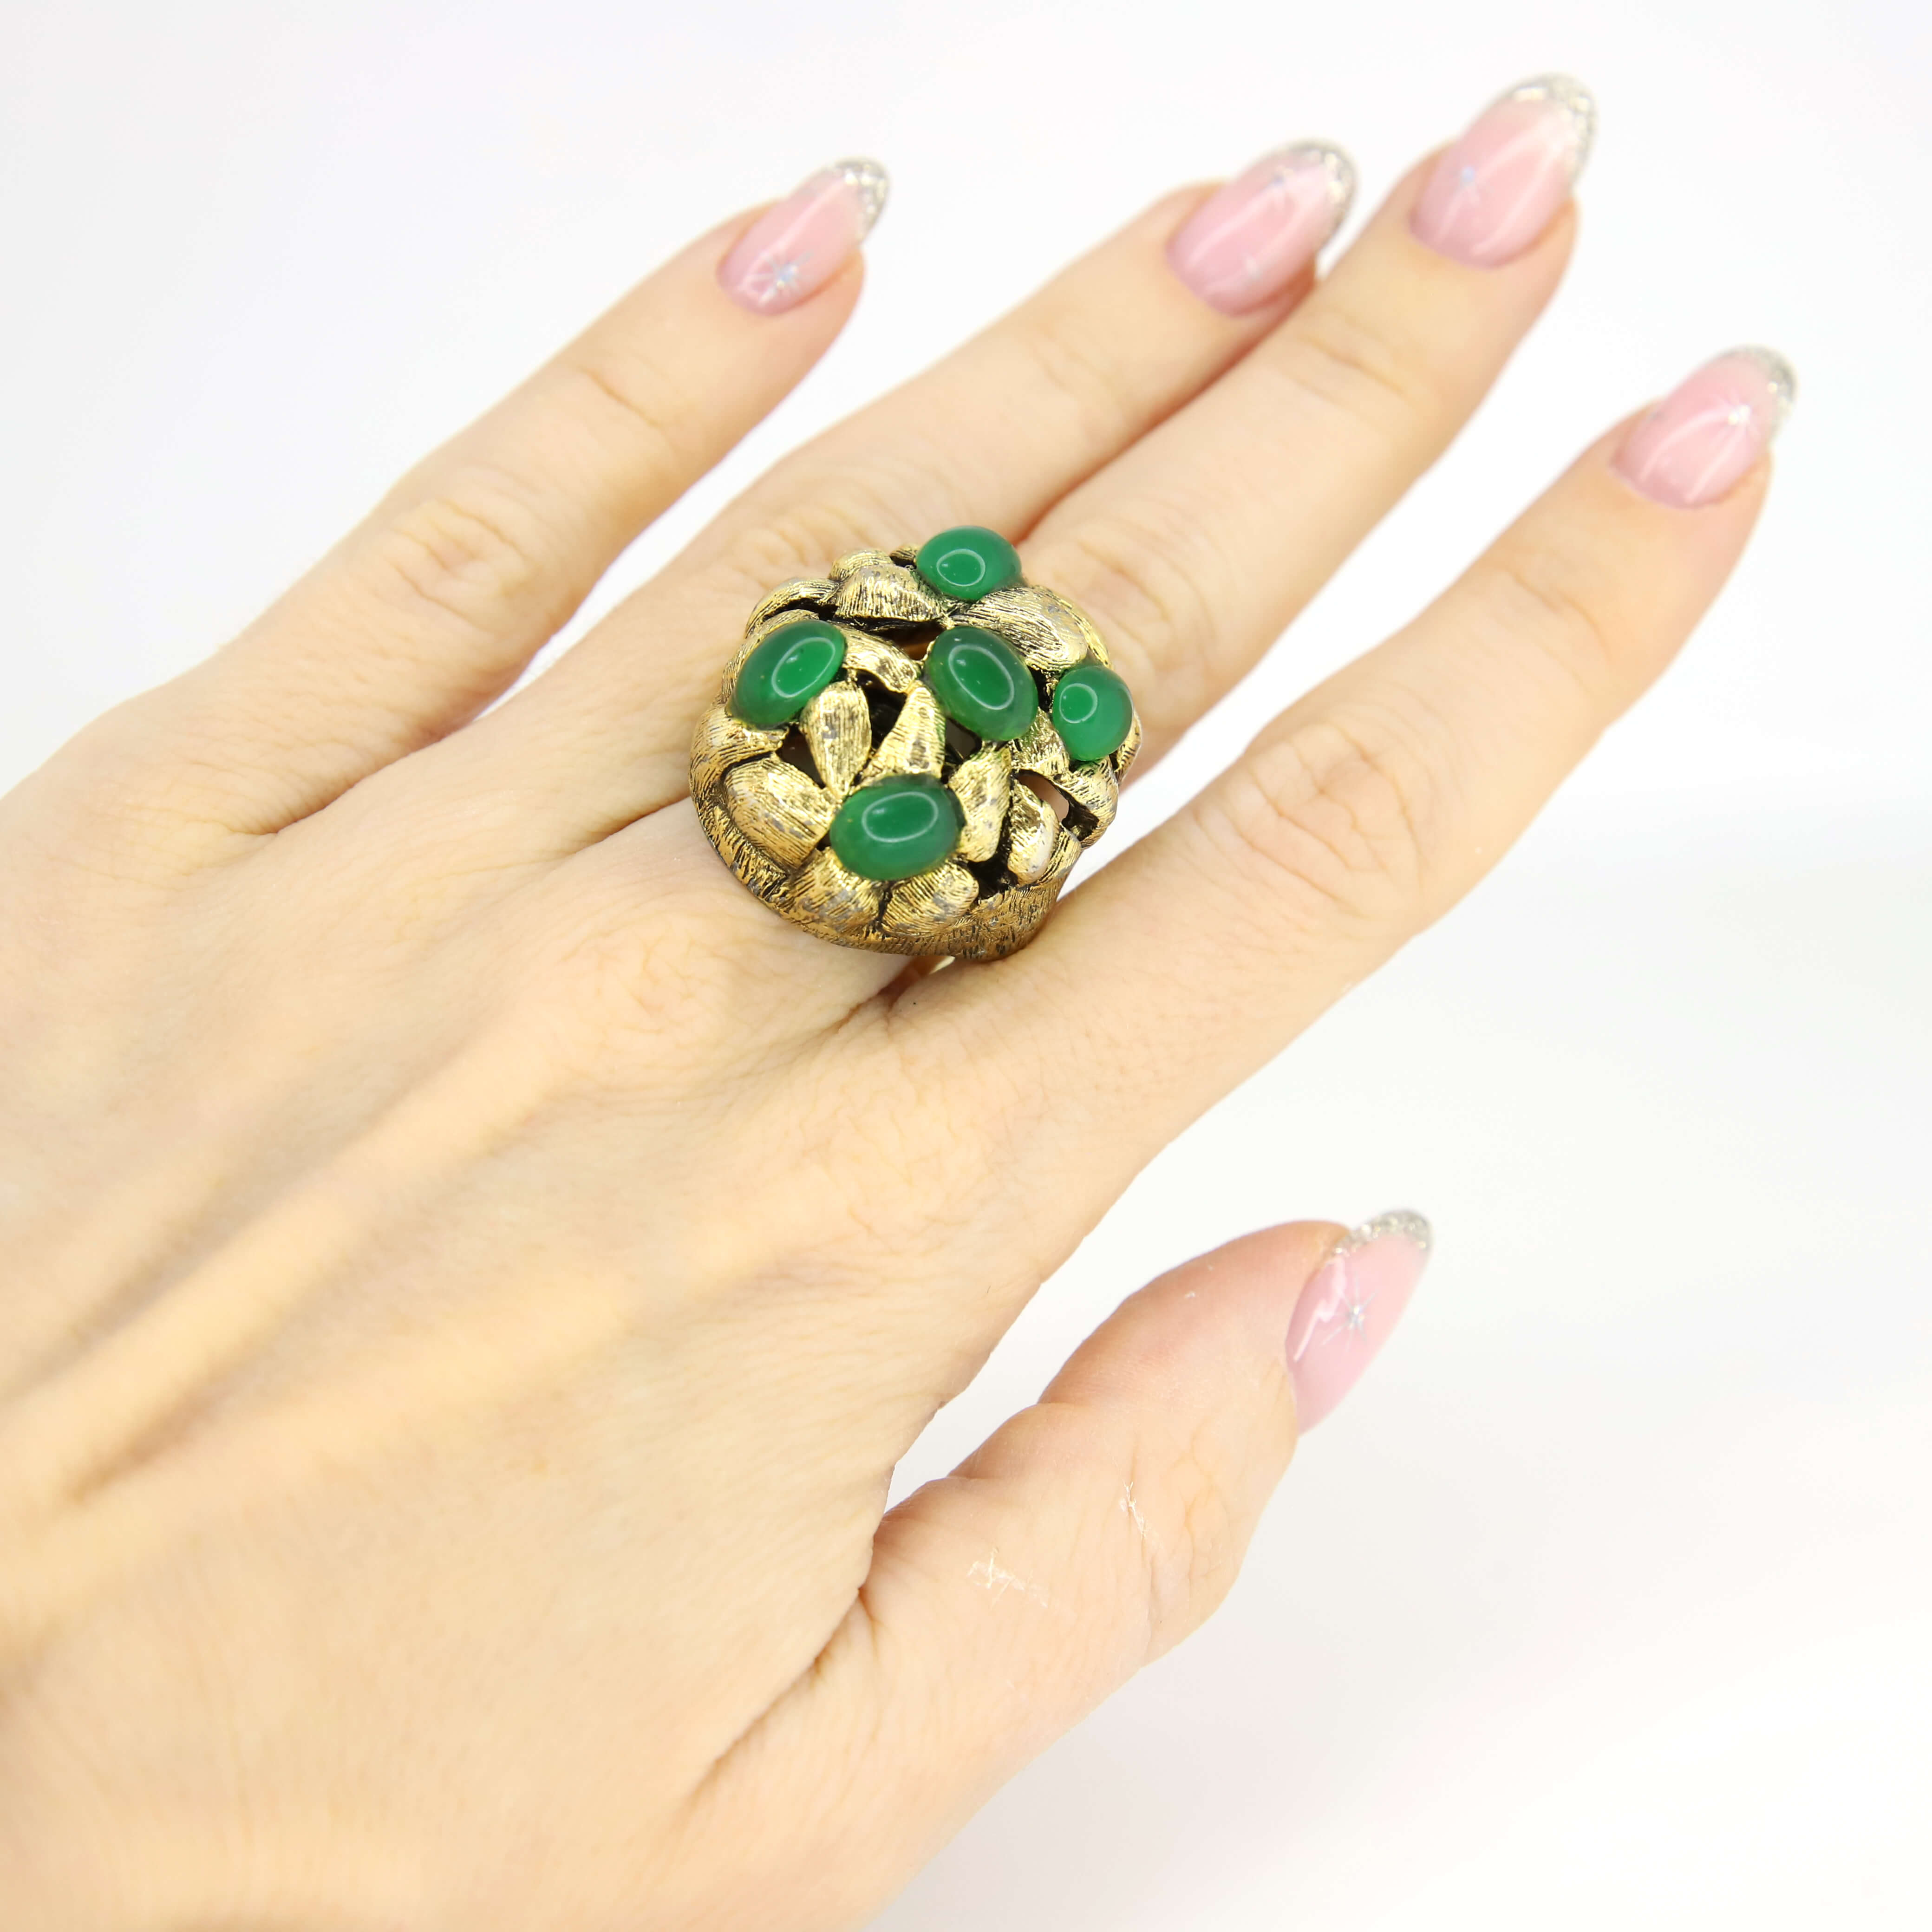 Винтажное кольцо Hobe размер 17-18, цвет Зеленый, фото 1